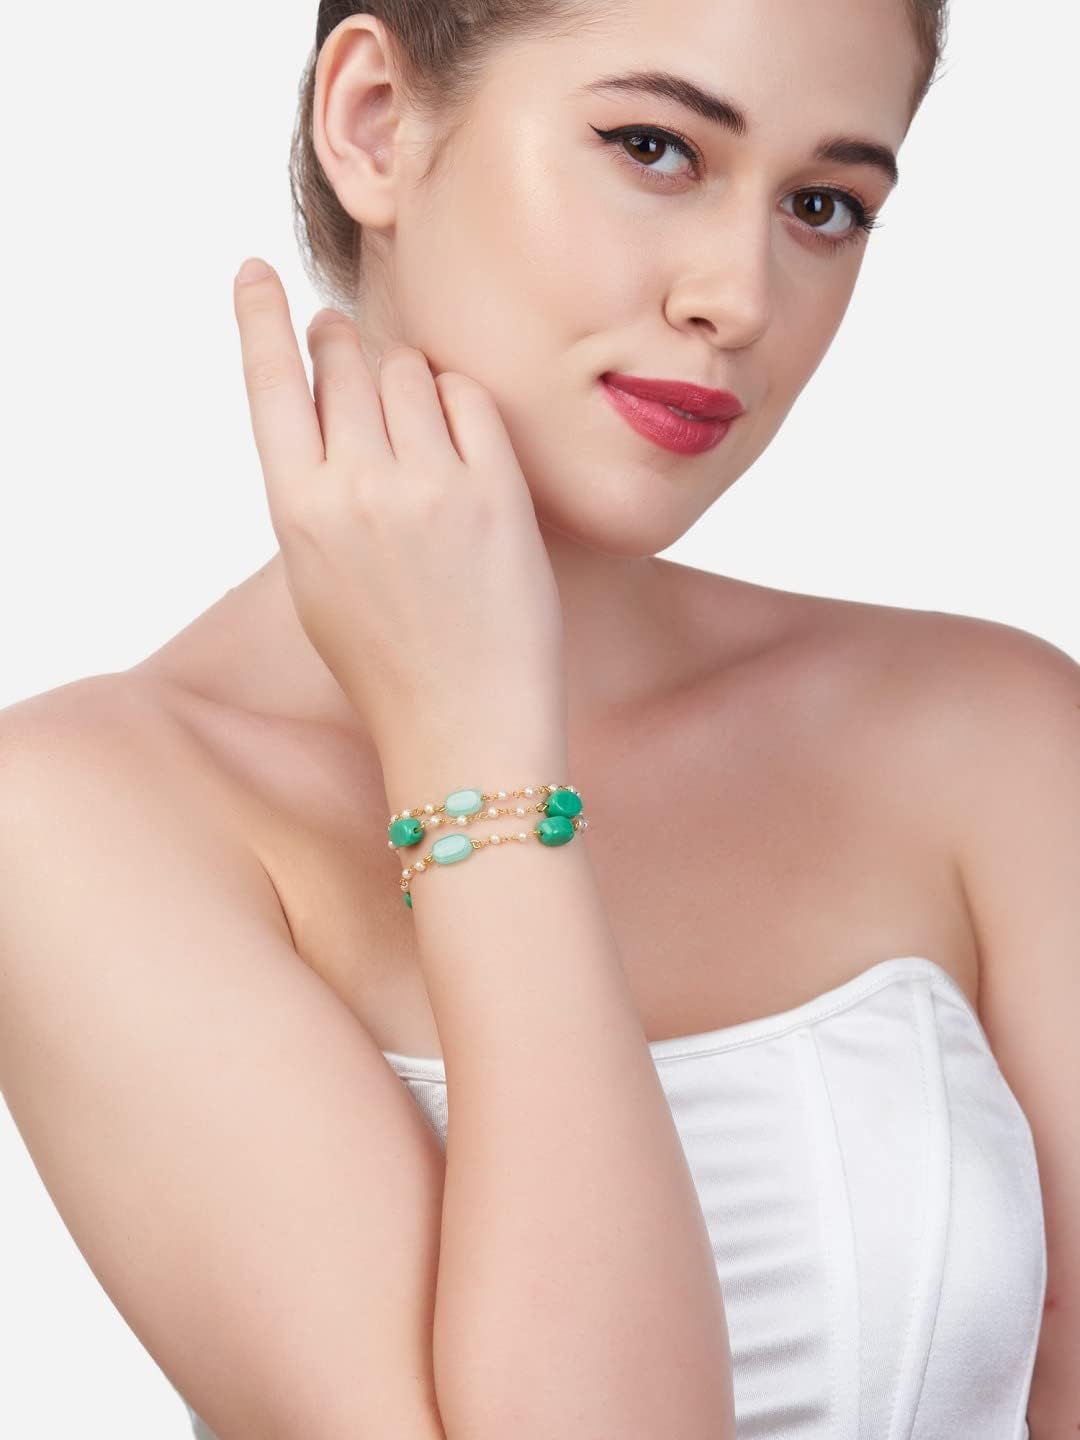 ZAVERI PEARLS Green Multistrand Beaded Ethnic Bracelet For Women-ZPFK13619, One Size